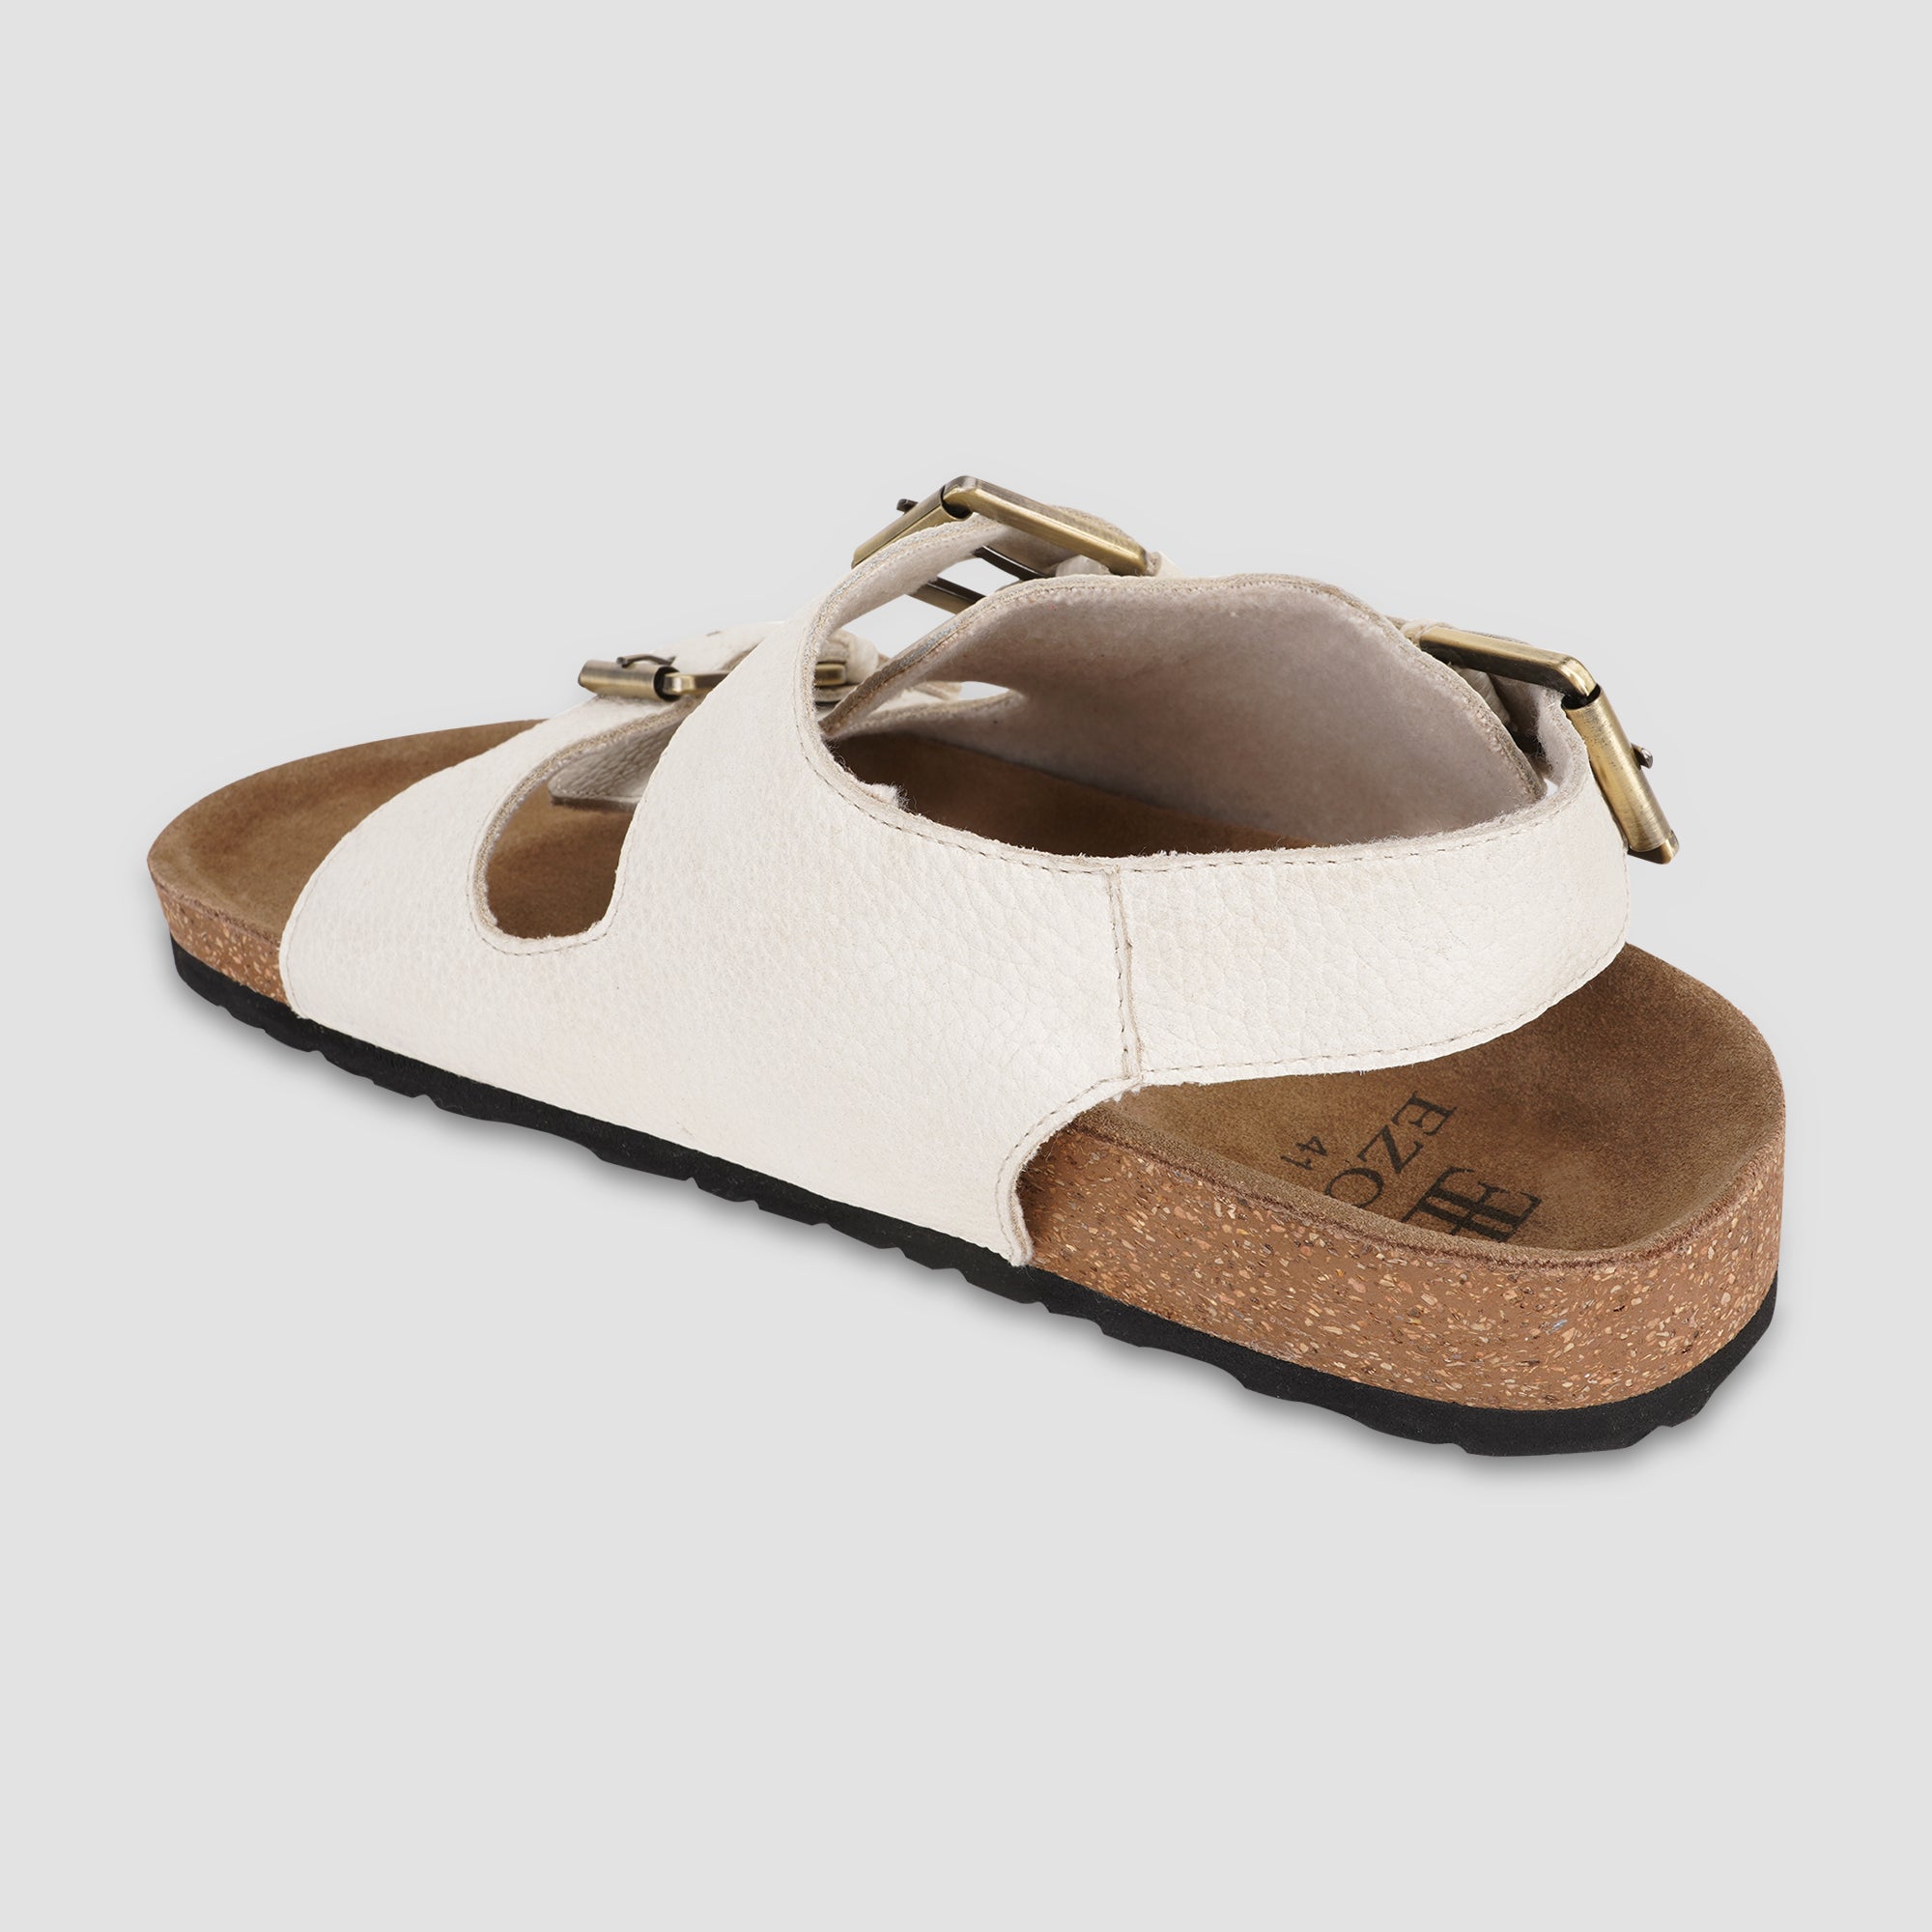 Ezok Beige Leather Sandal For Men